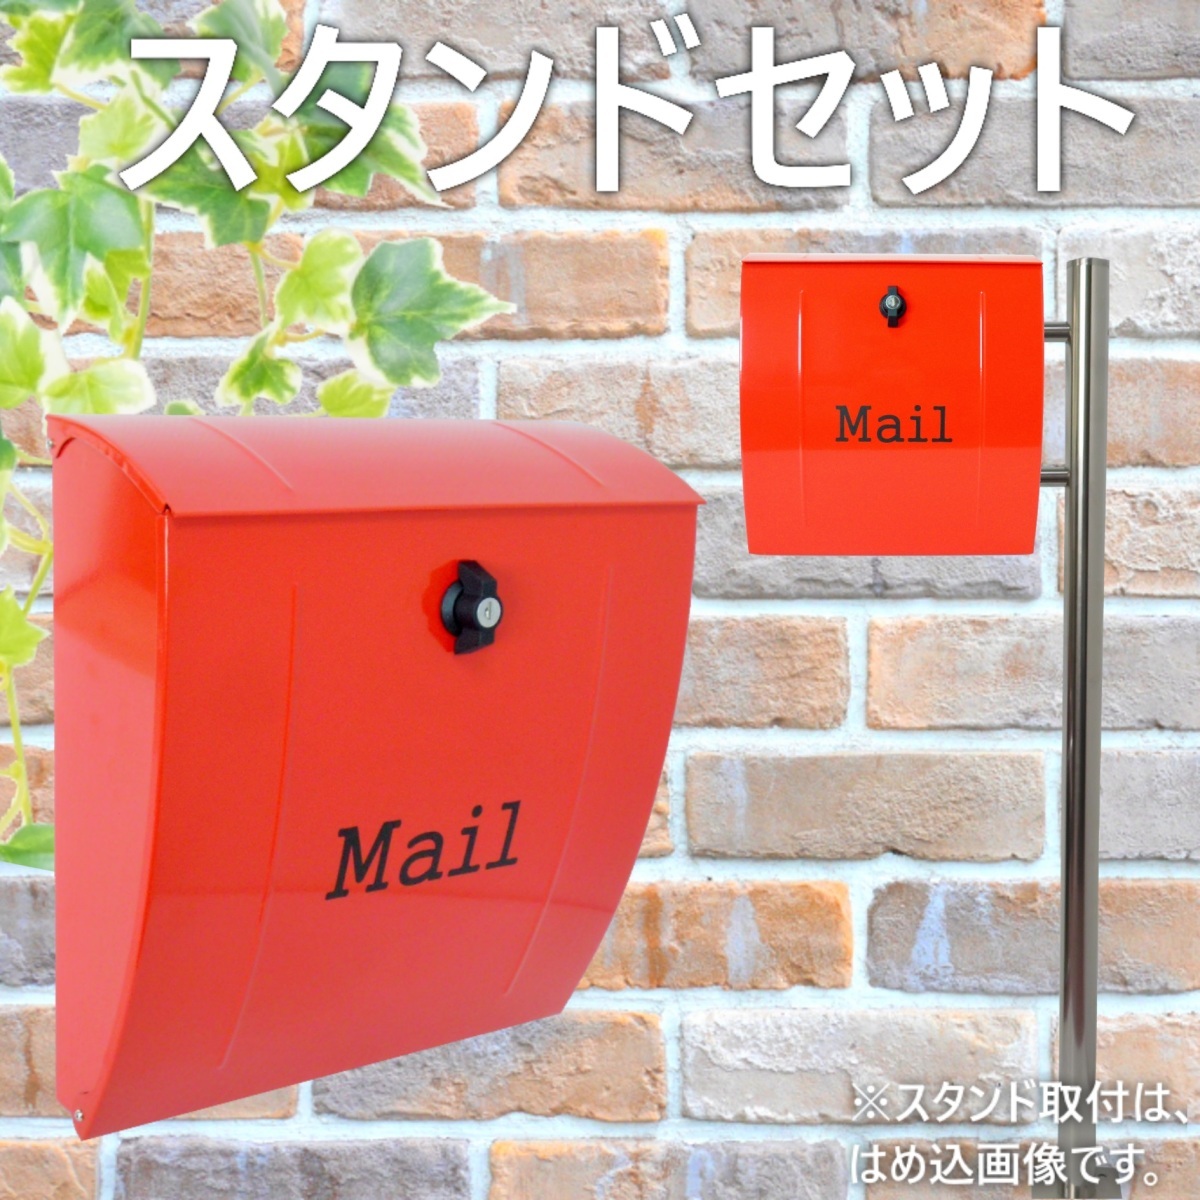 郵便ポスト郵便受けおしゃれ北欧大型鍵付きスタンド型プレミアムステンレスレッド赤色ポストpm281s-pm021